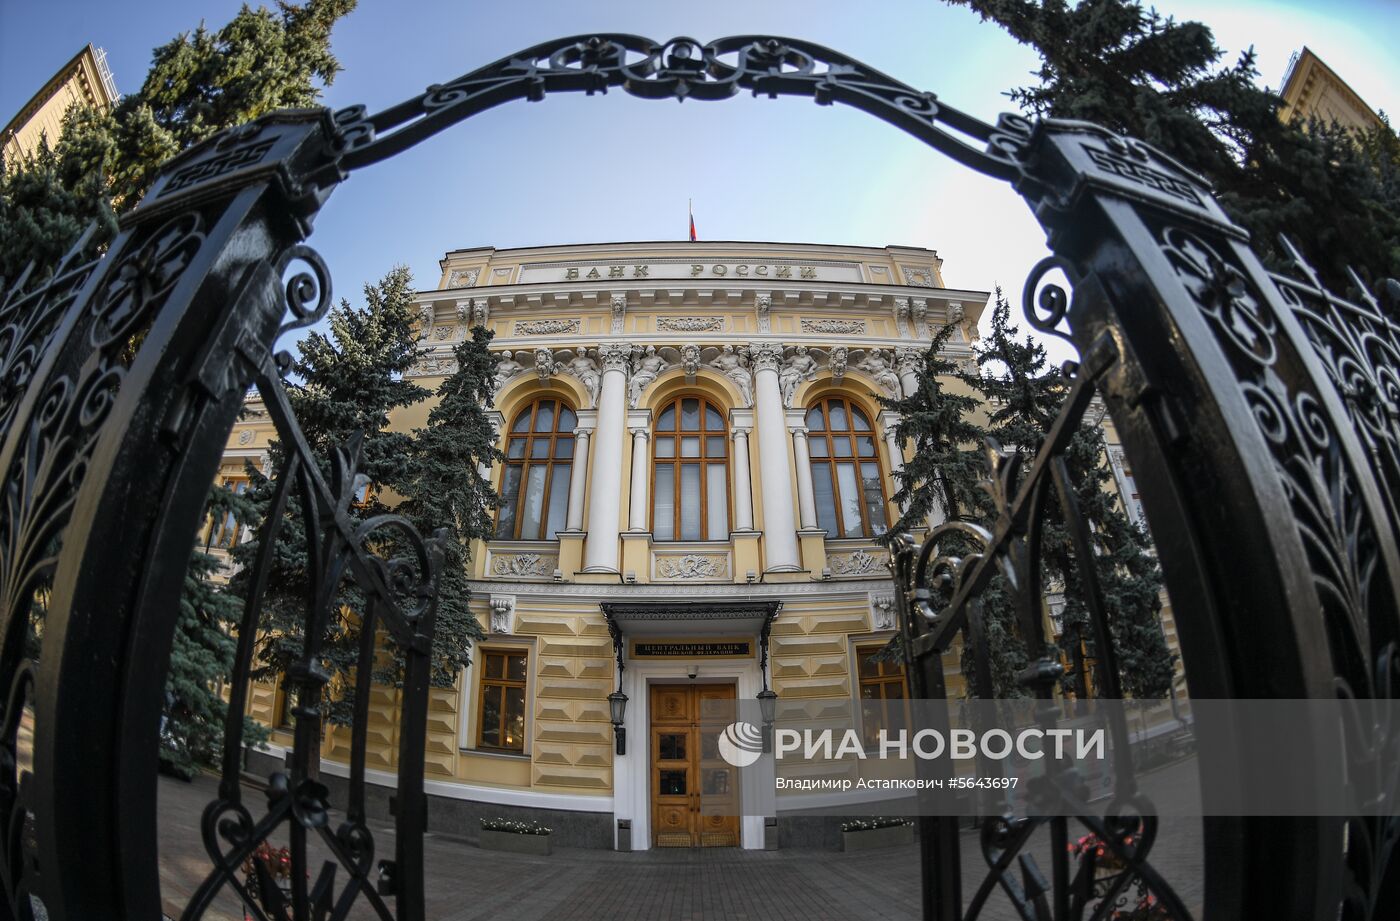 День открытых дверей Банка России